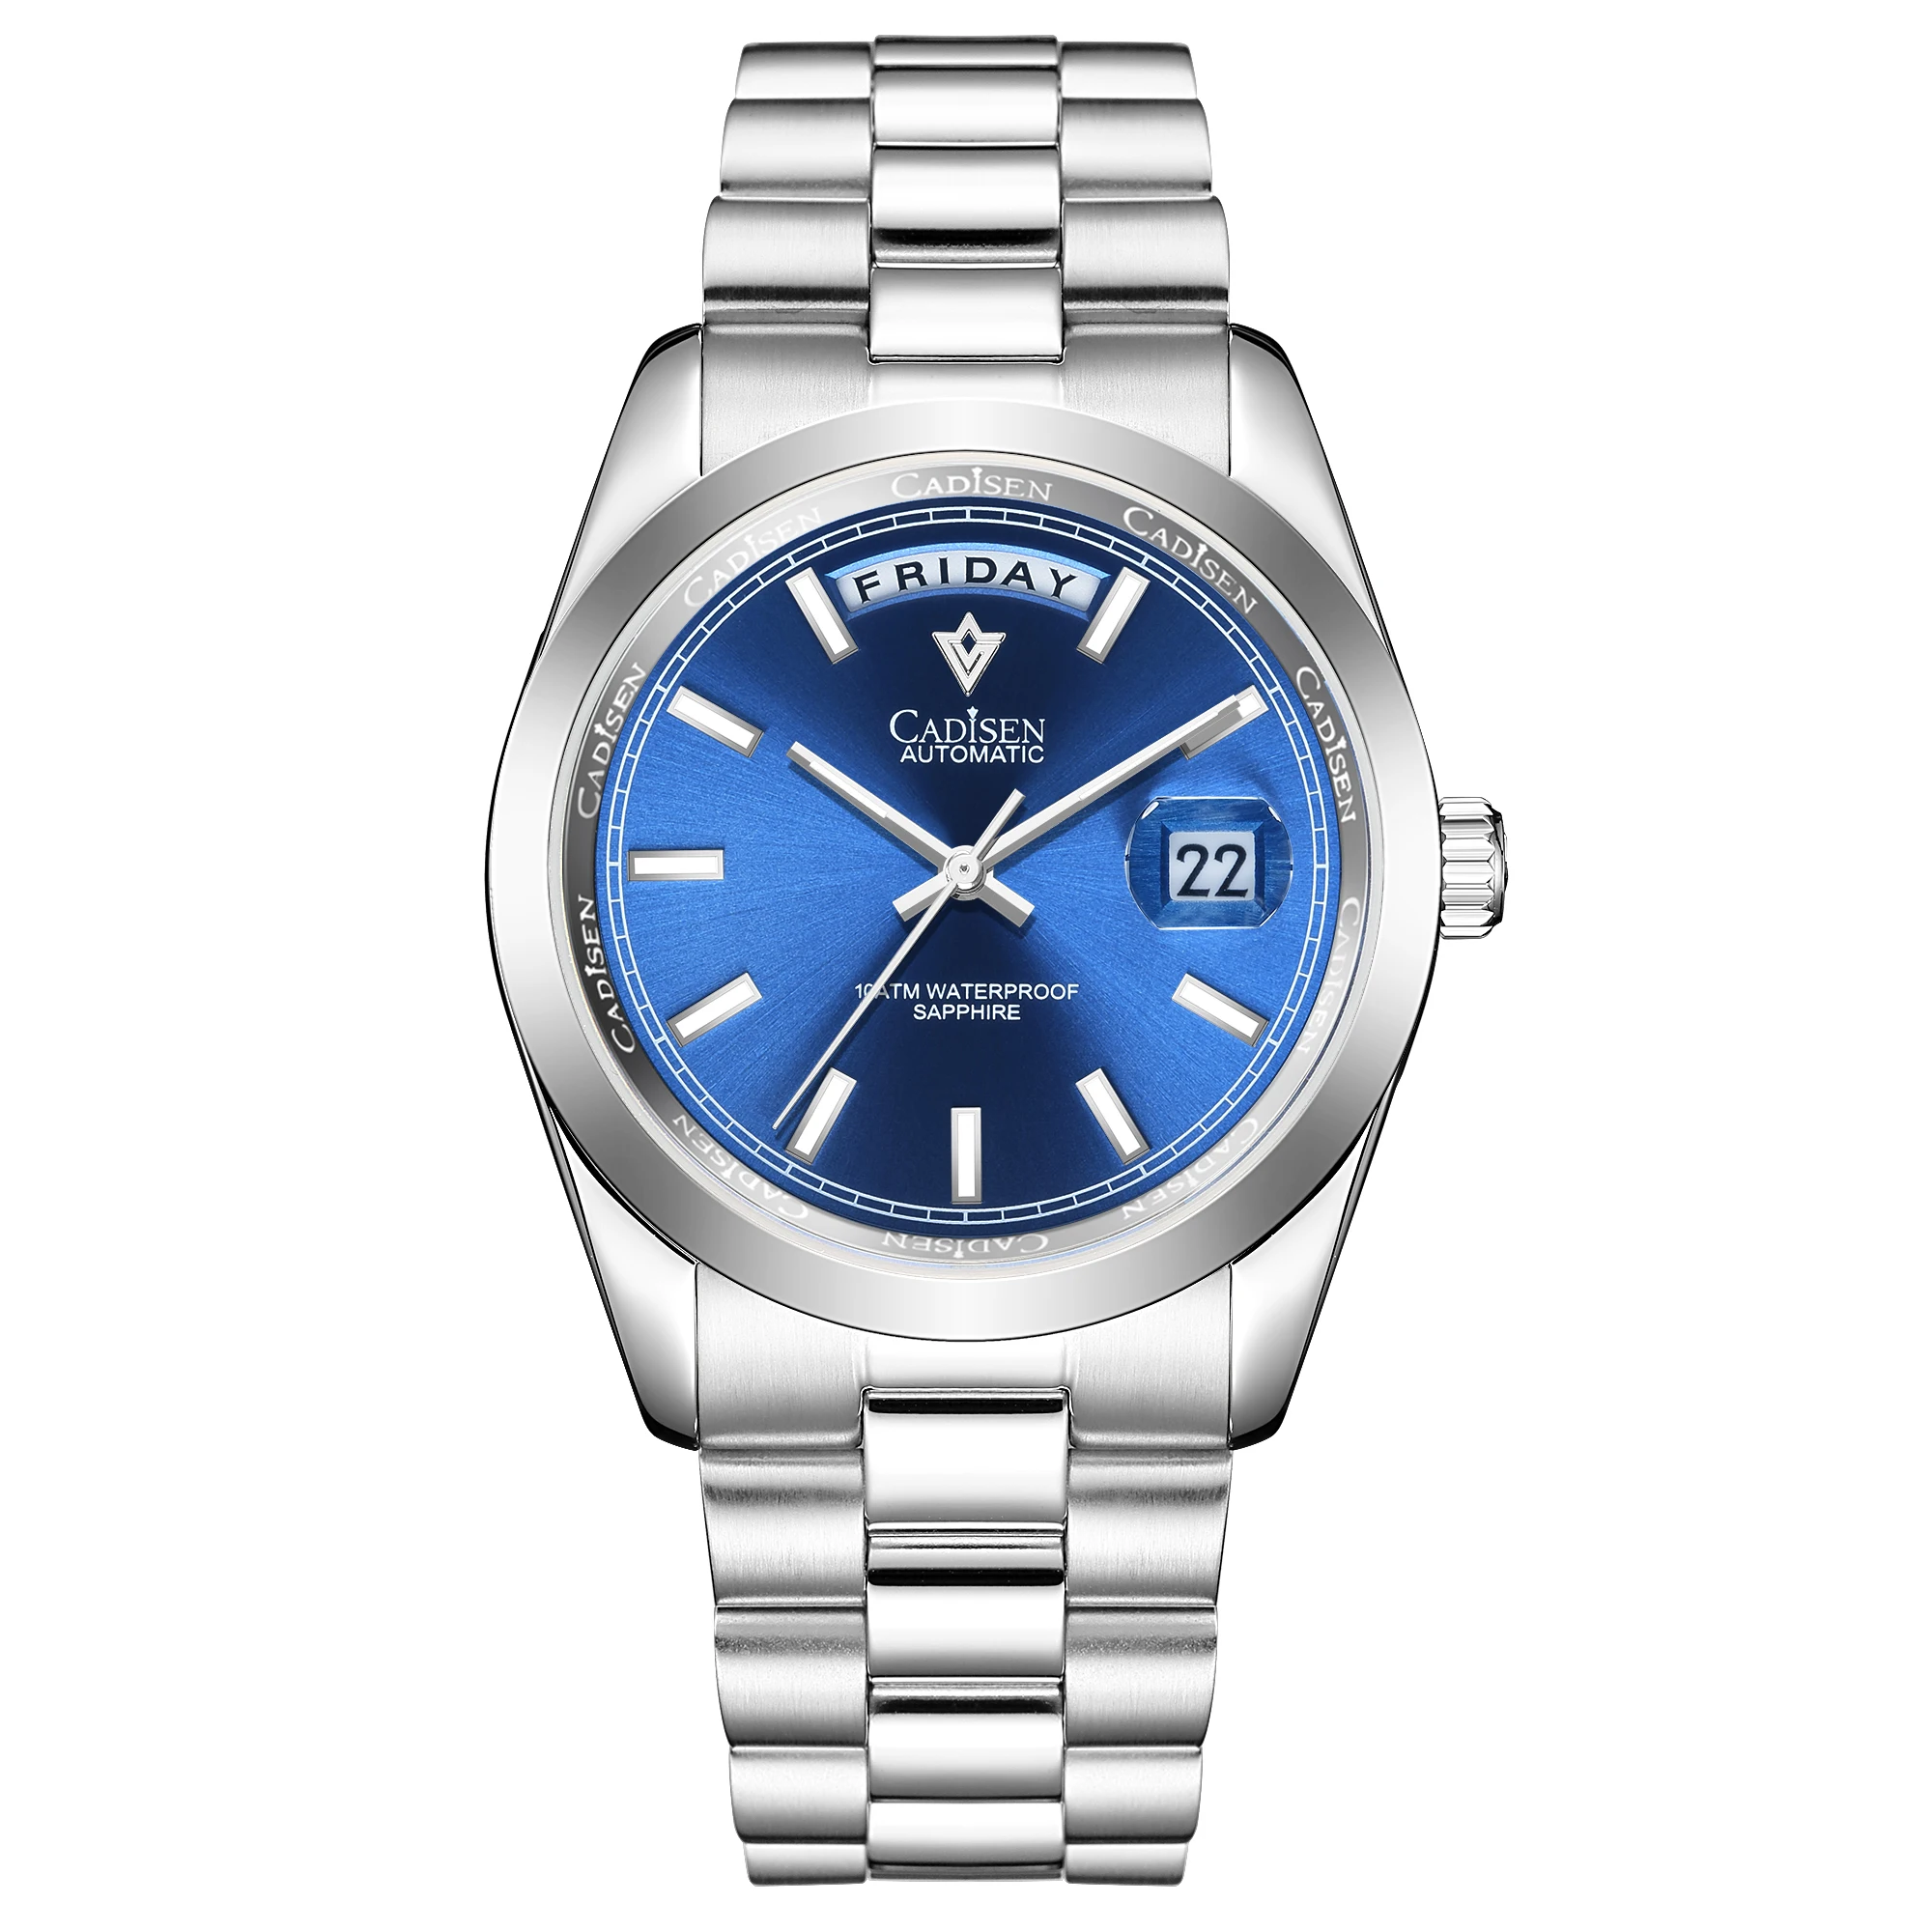 Часы наручные CADISEN мужские с синим циферблатом брендовые Роскошные